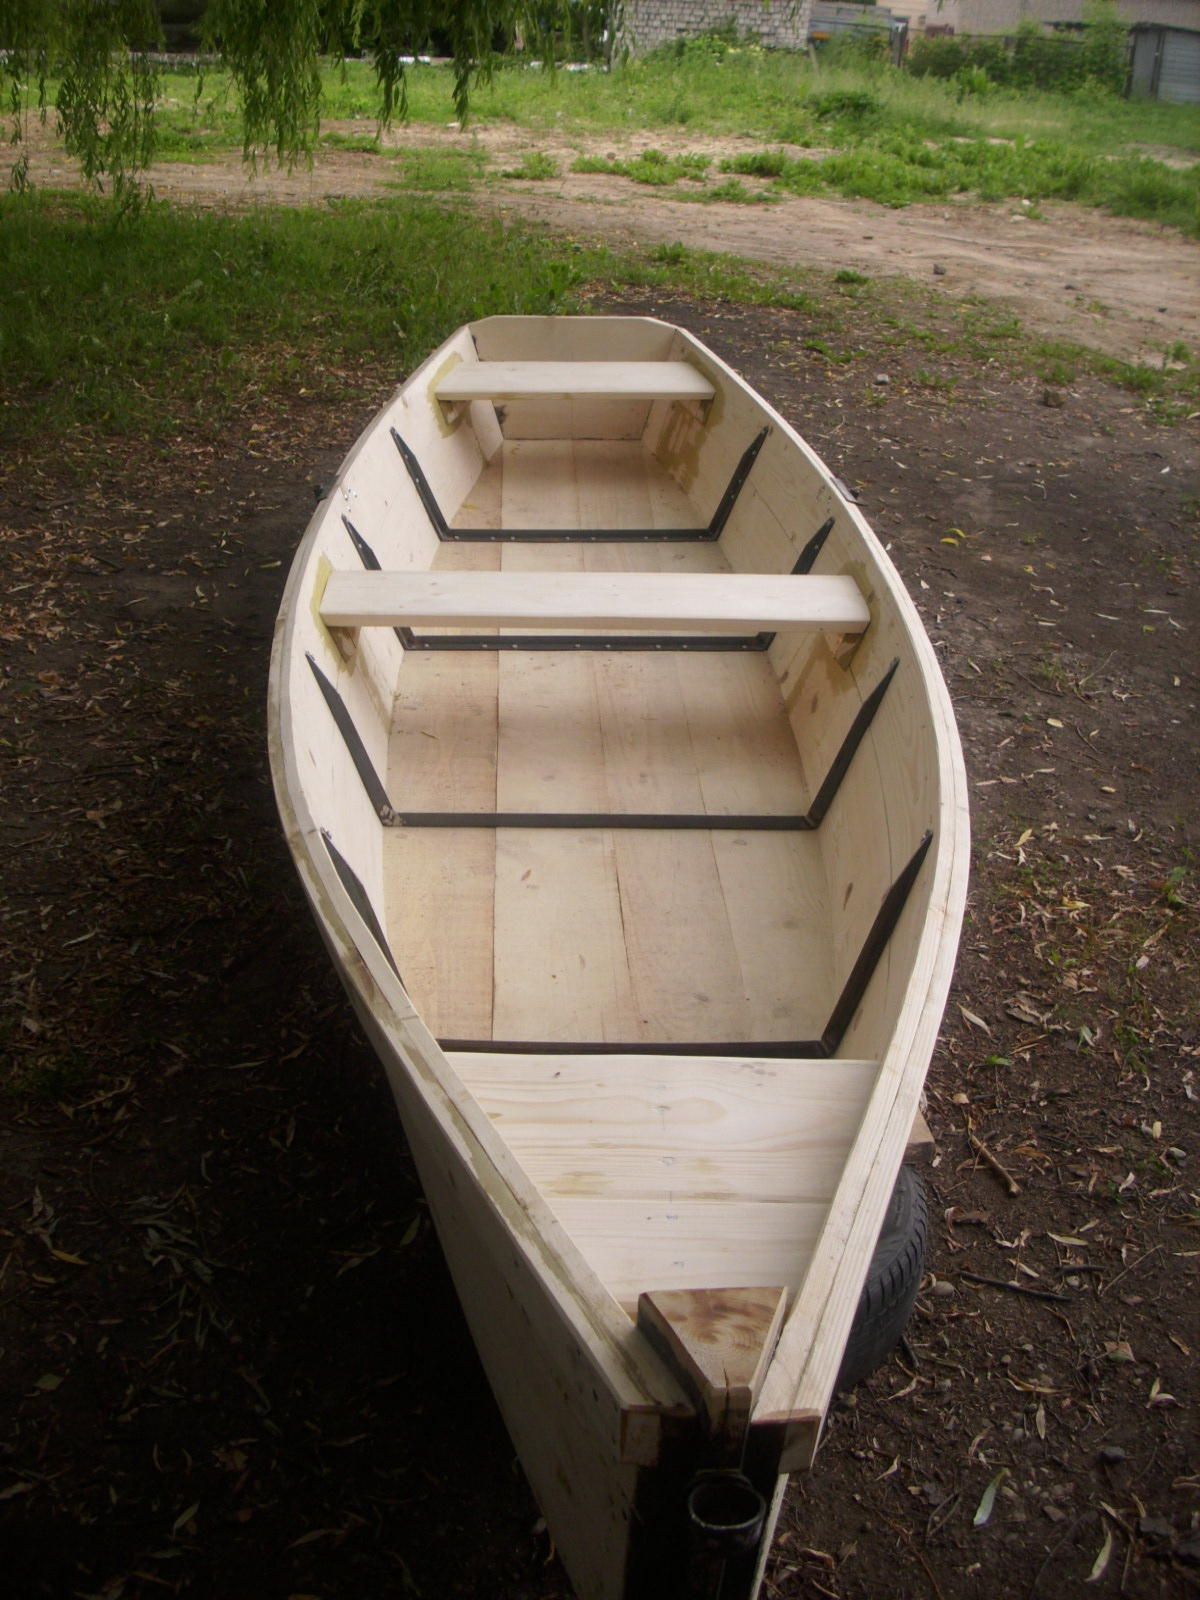 Как сделать деревянную лодку: инструкция с чертежами - строительство дома, ремонт в квартире, все для дачи - nashakrepost.ru.